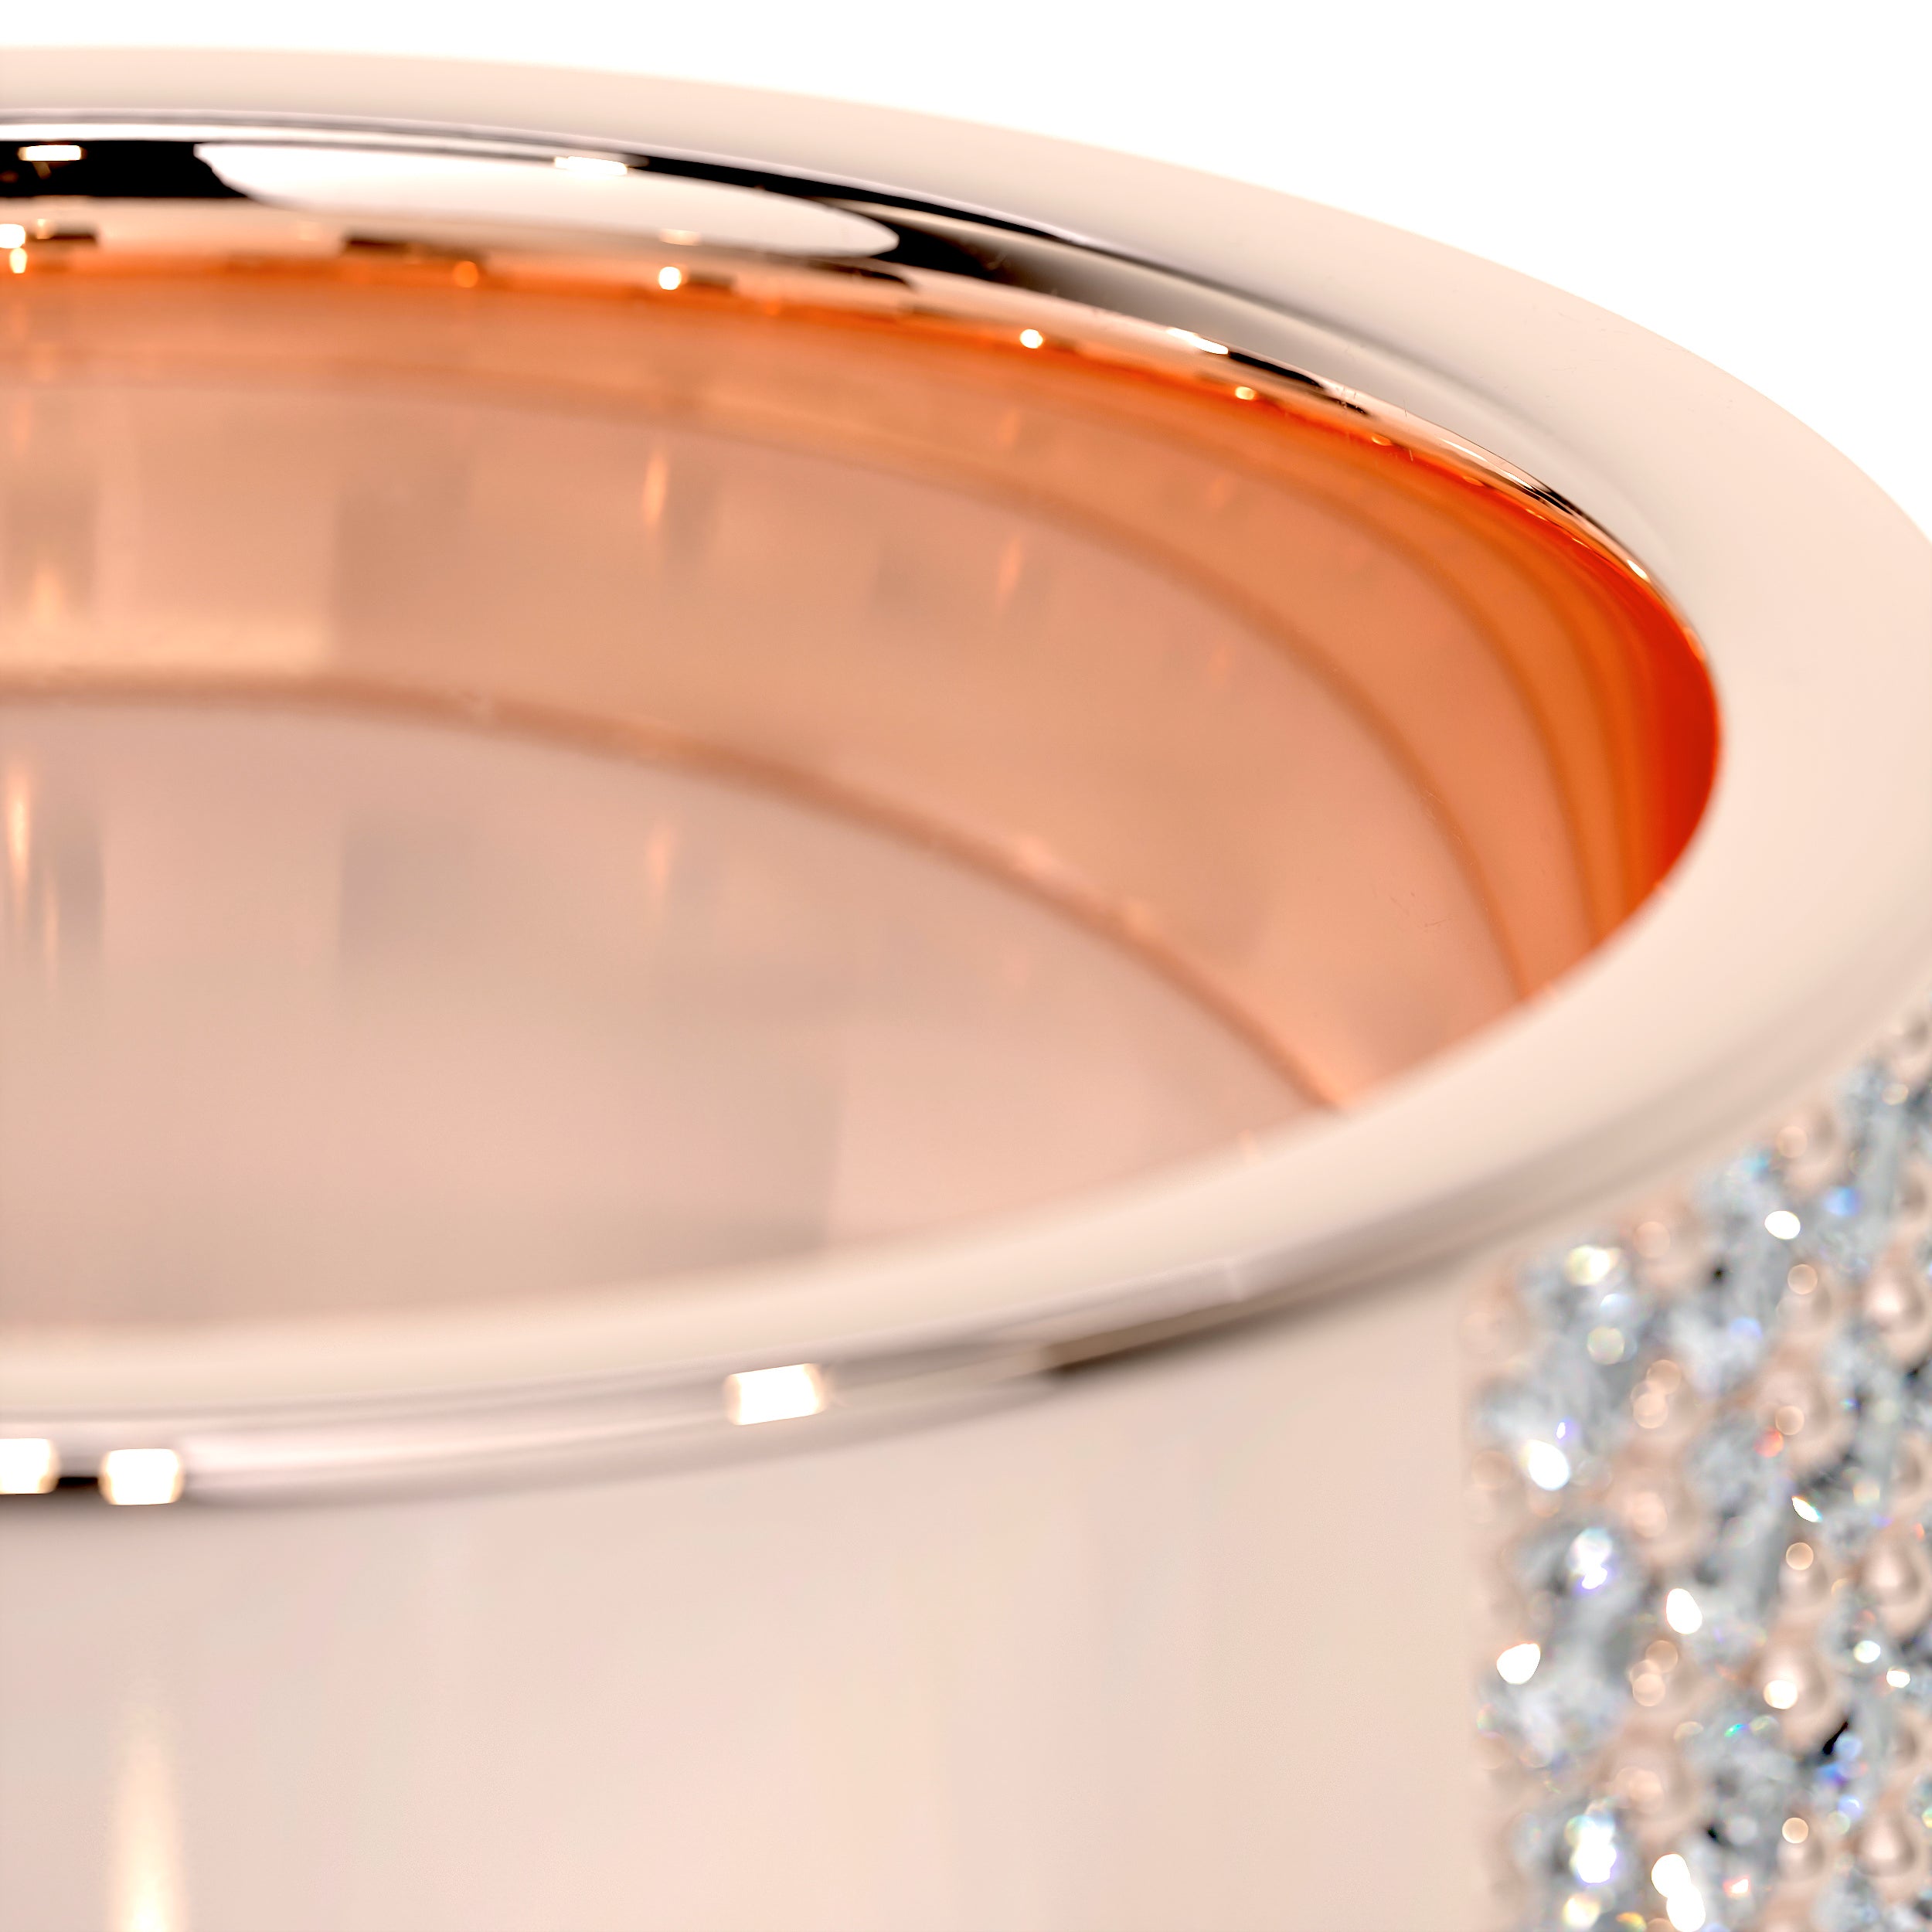 June Diamond Wedding Ring   (1 Carat) -14K Rose Gold